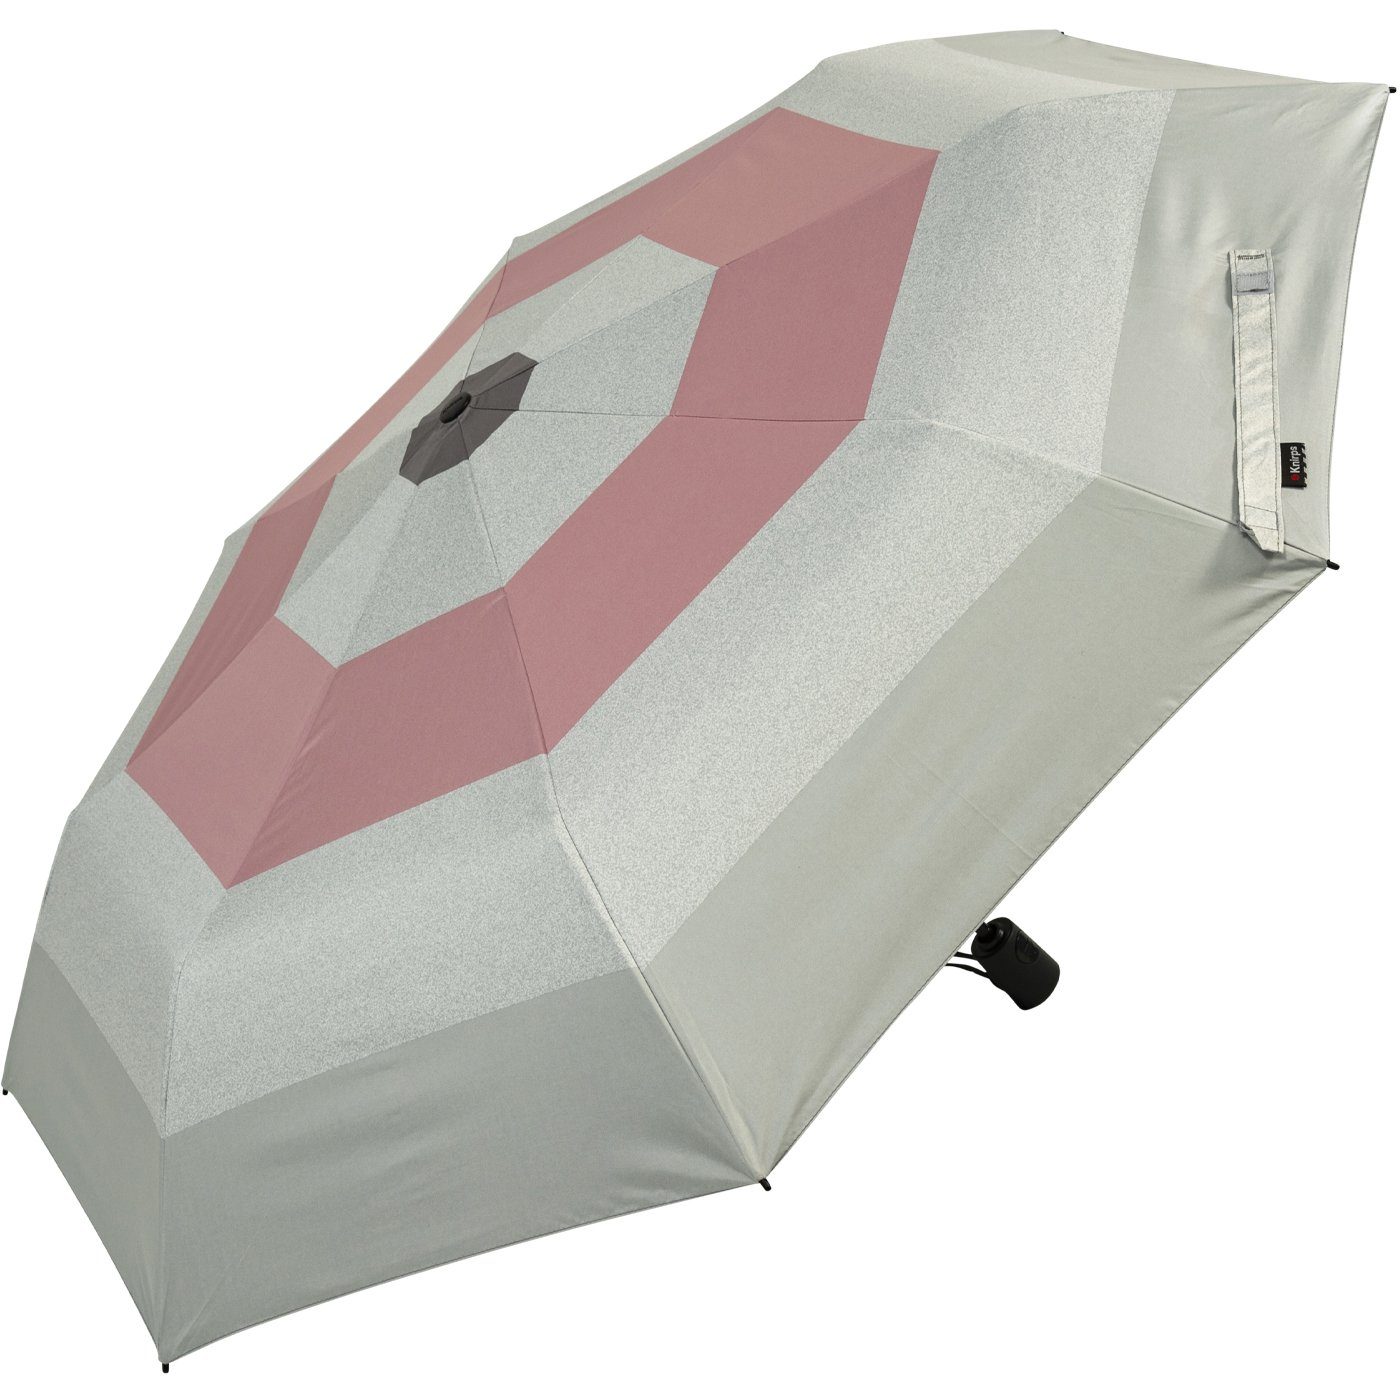 Damen-Taschenschirm A.200 rosa: UV-Schutz, zu 95% Auf-Zu-Automatik, Popy bis grau-rosa Taschenregenschirm Hitze-Schutz mit Knirps® 40%